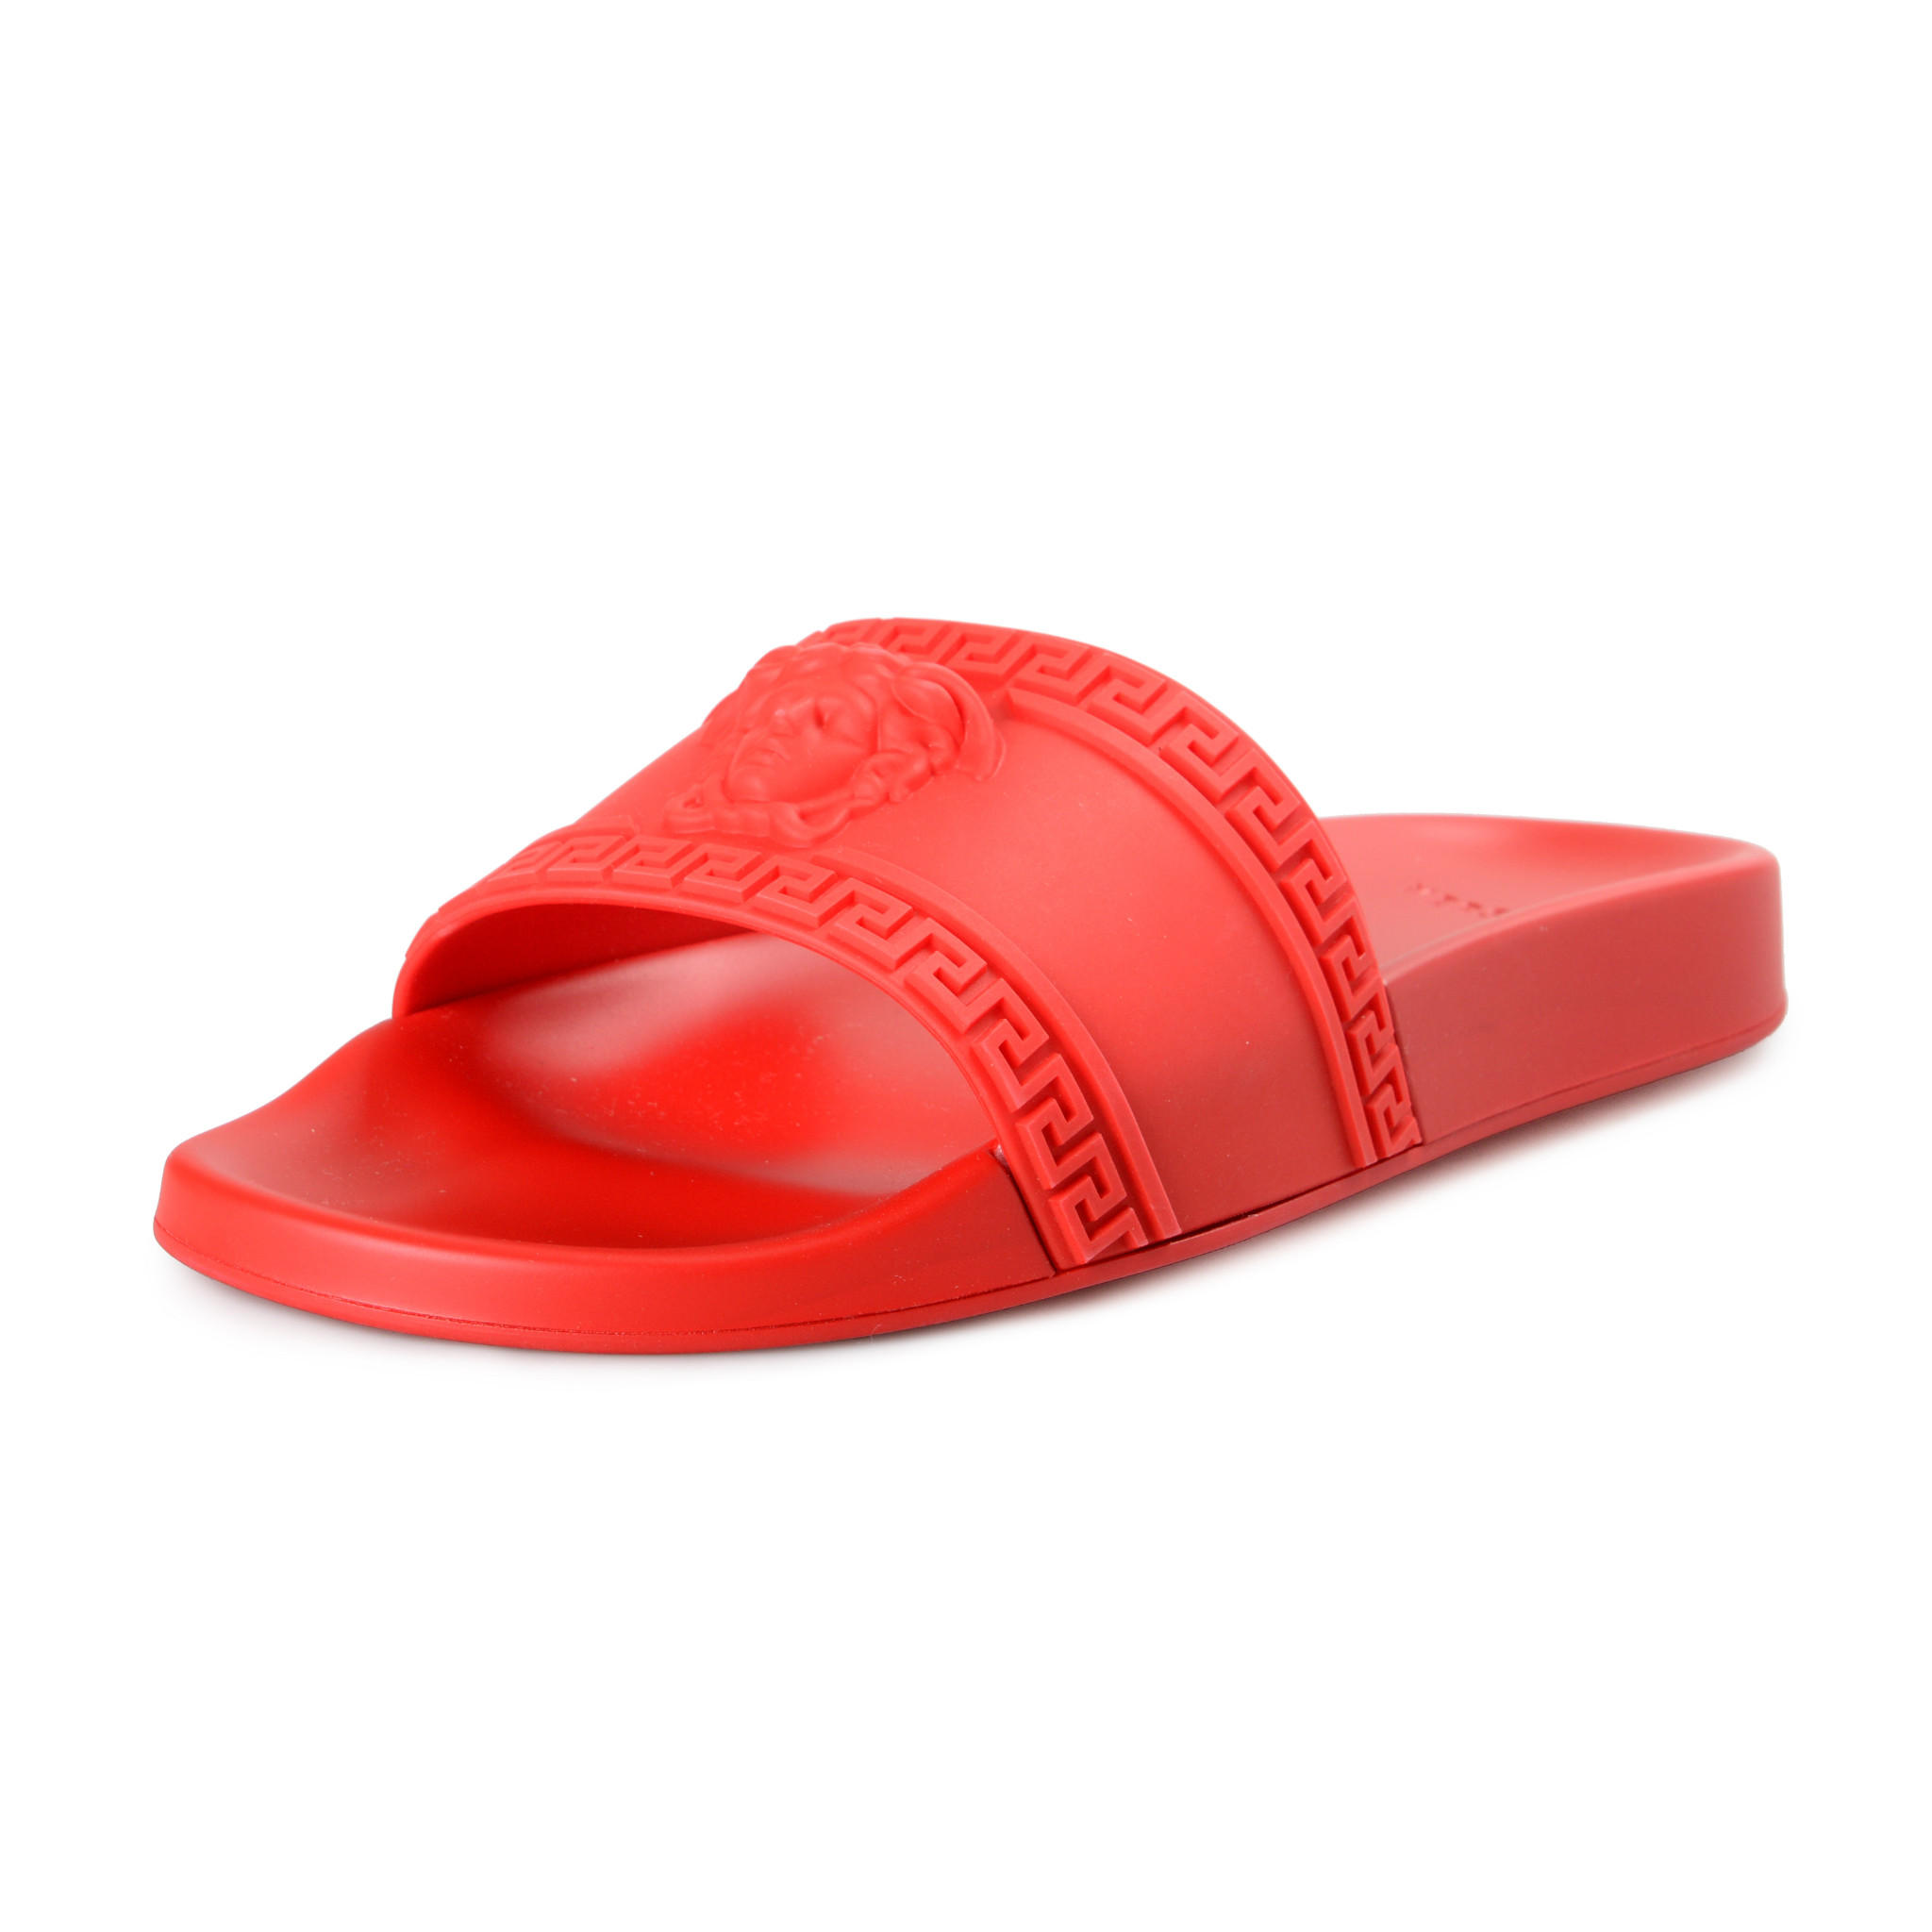 Versace Men's Bright Red Medusa Head Rubber Flip Flops Shoes US 8 IT 41 ...